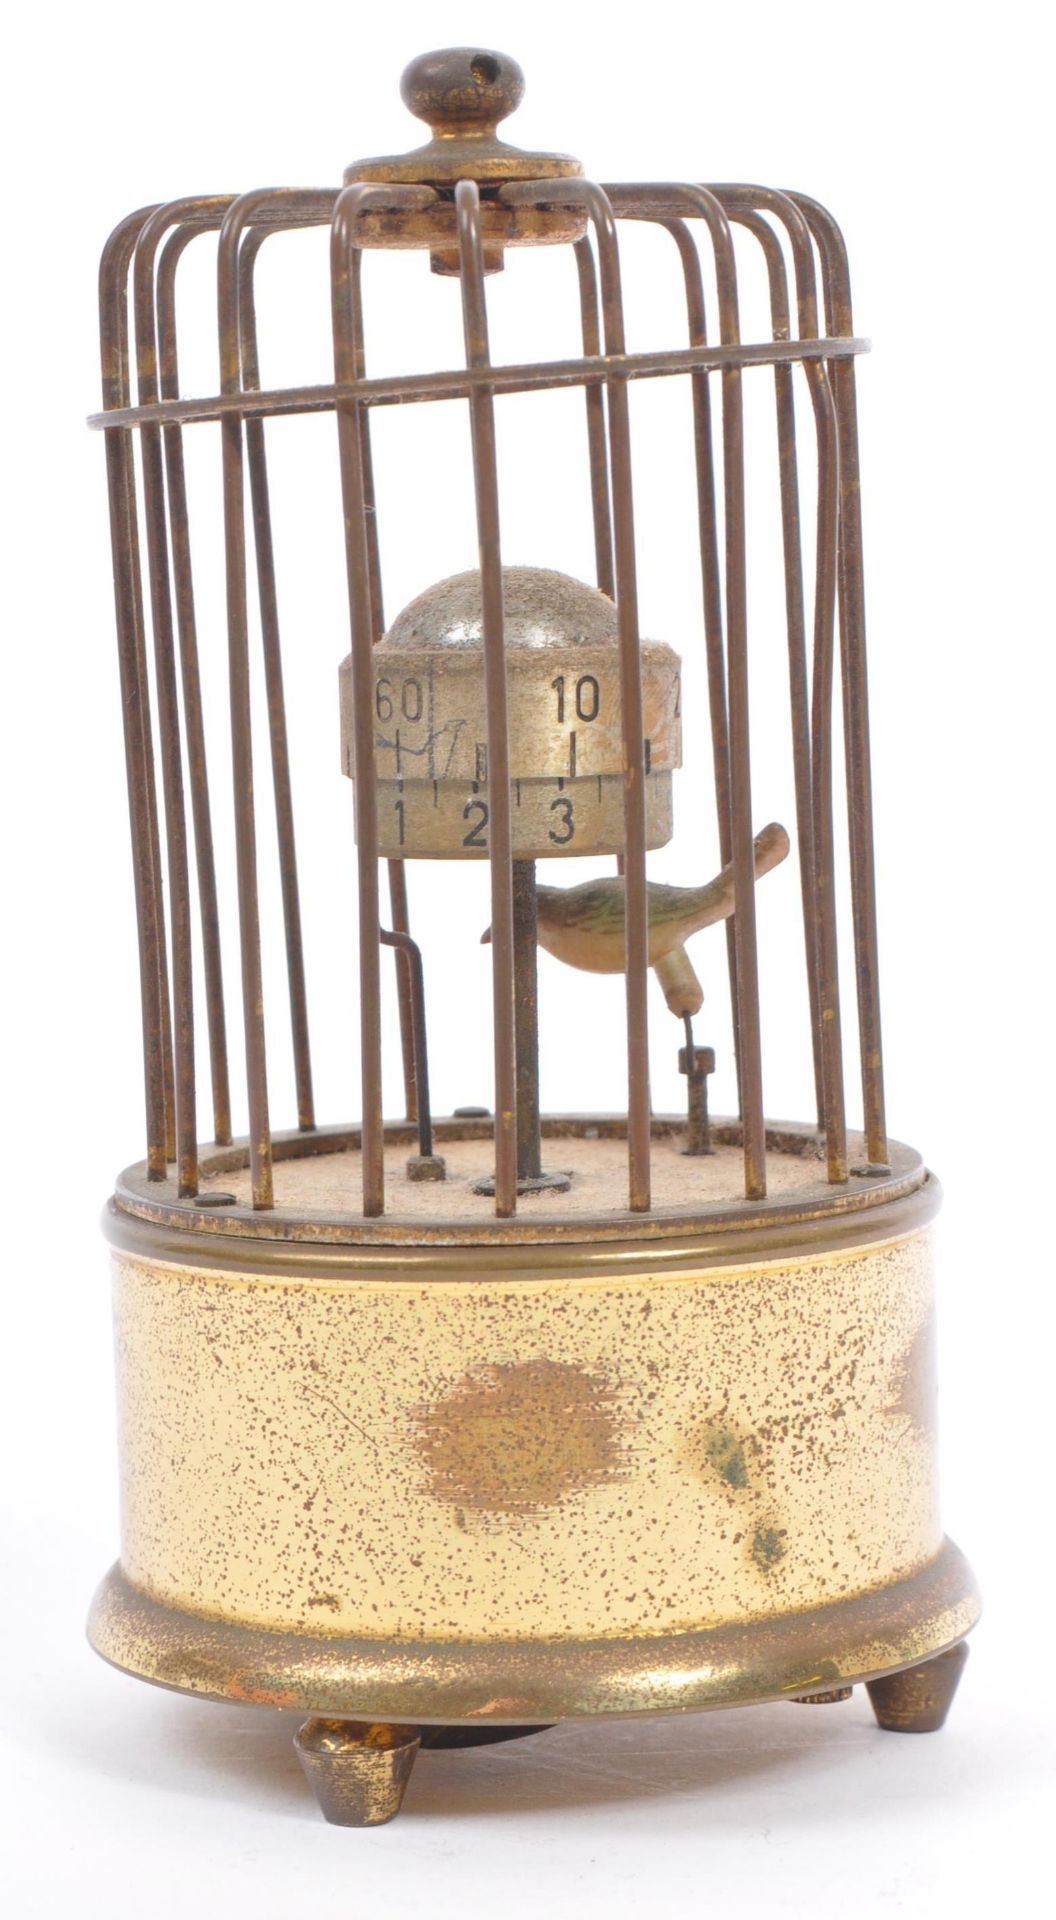 1950S MID CENTURY GERMAN KAISER ORBITAL BIRD CAGE CLOCK - Image 3 of 6